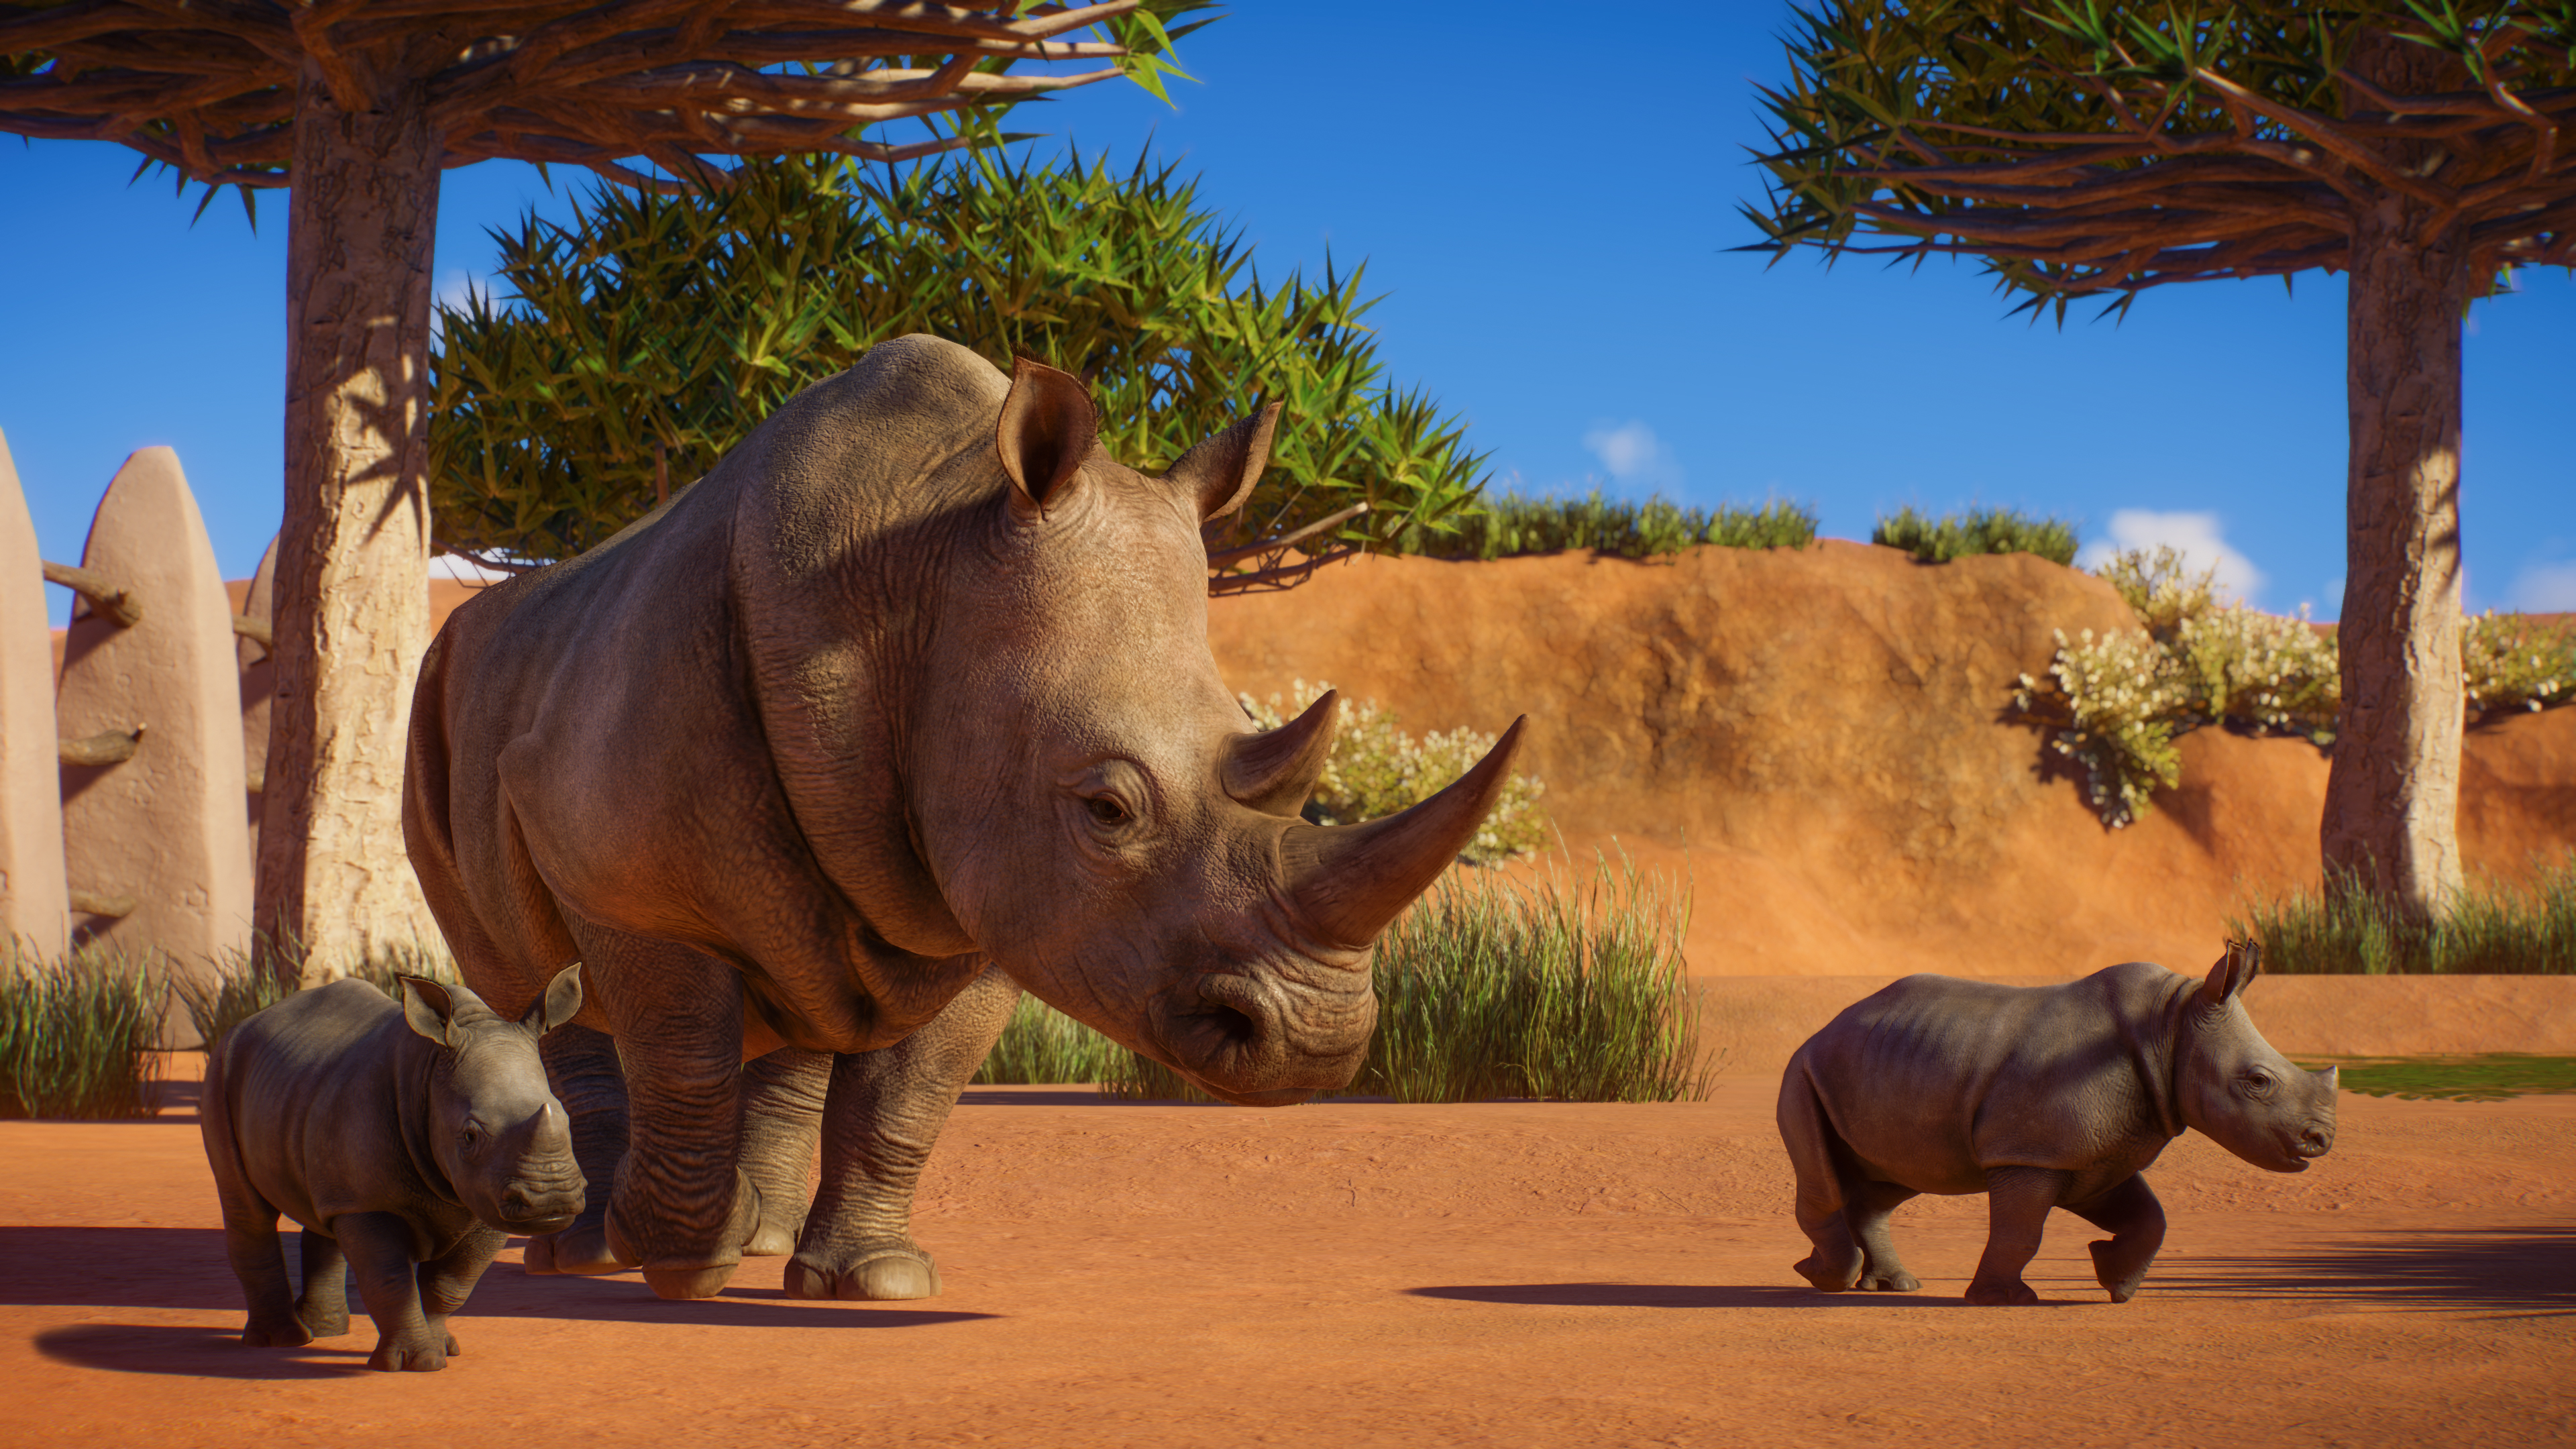 Screenshot from Planet Zoo showing a Rhino